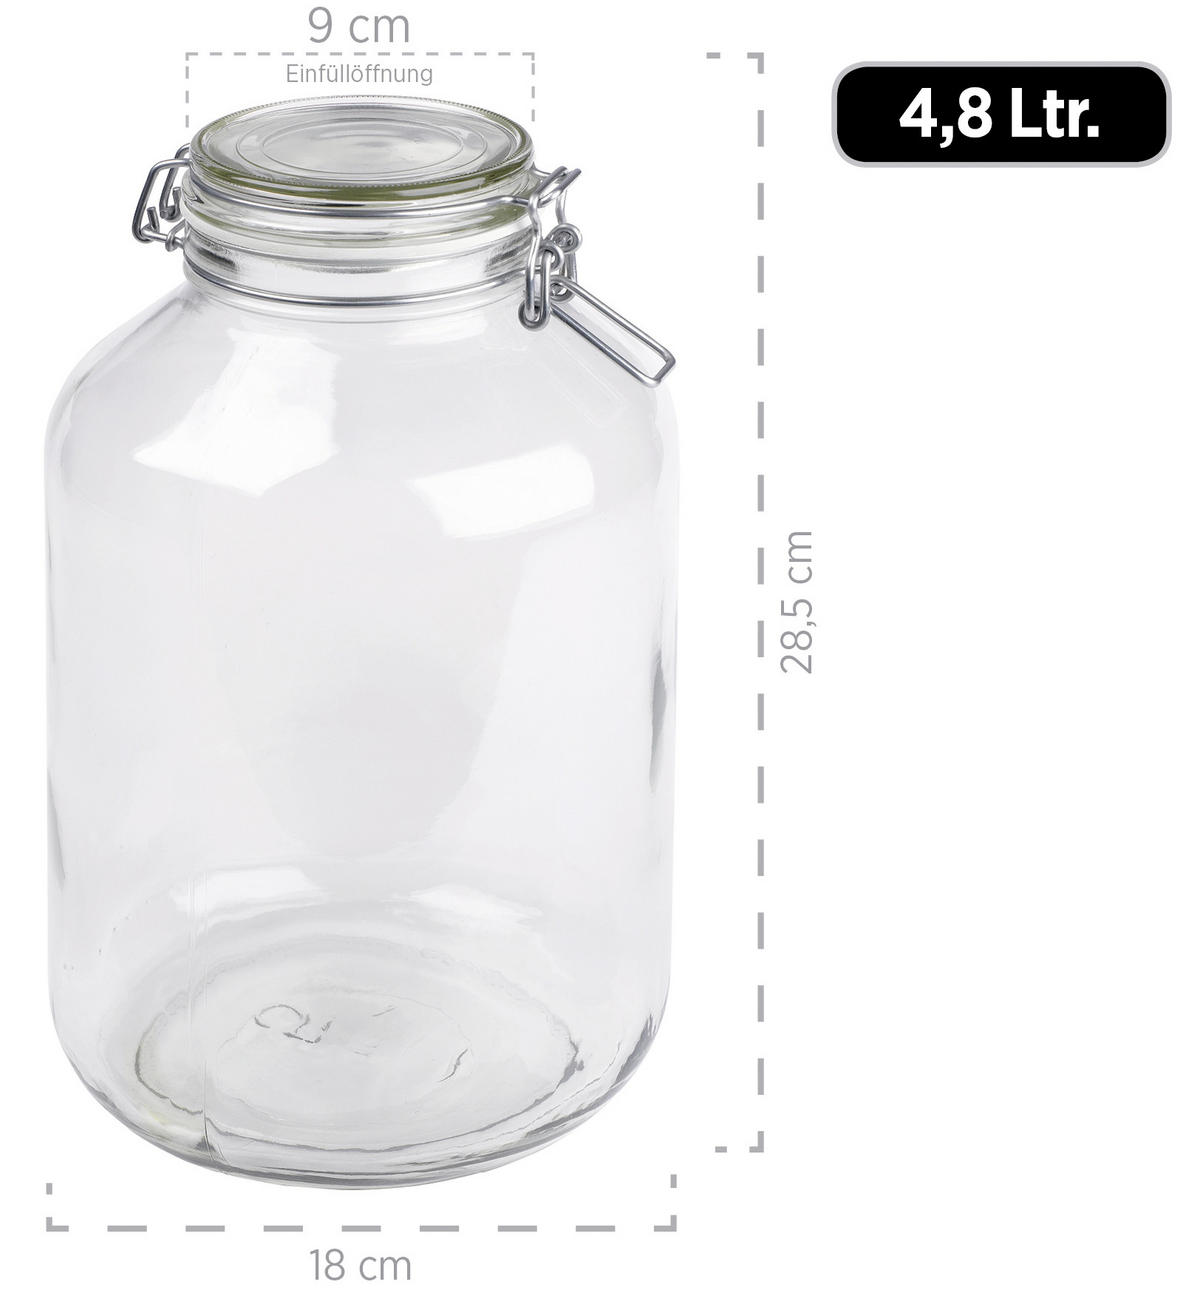 Einmachglas-Set 2-teilig 4,8 Liter online kaufen